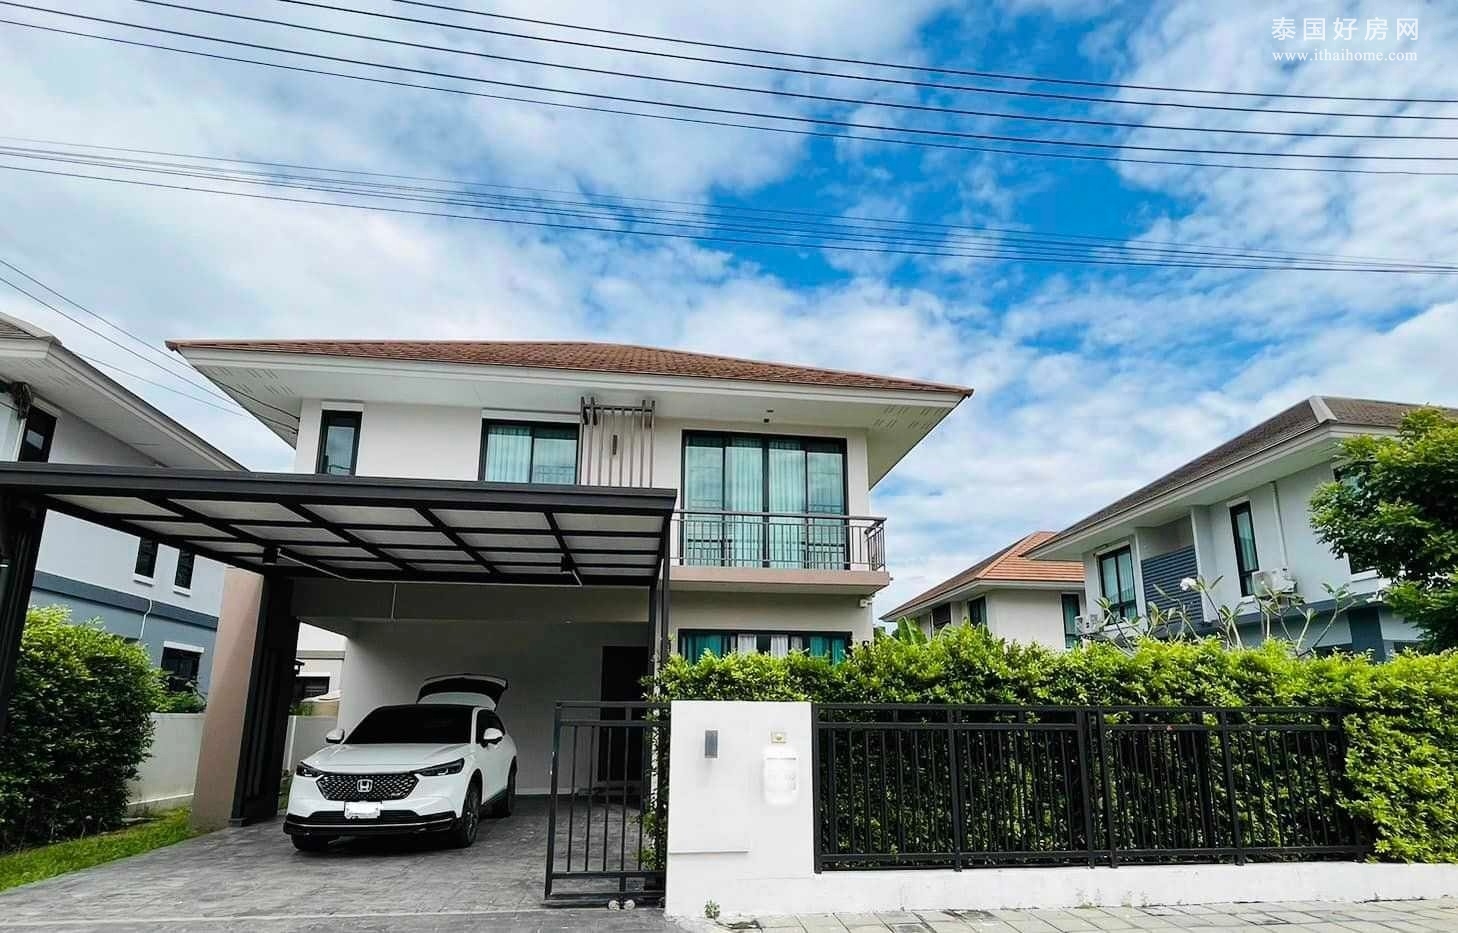 巴吞他尼府 | Sammakorn Rangsit-Klong 7 独栋别墅出租/出售 3卧 160平米 出租35,000泰铢/月，出售750万泰铢 